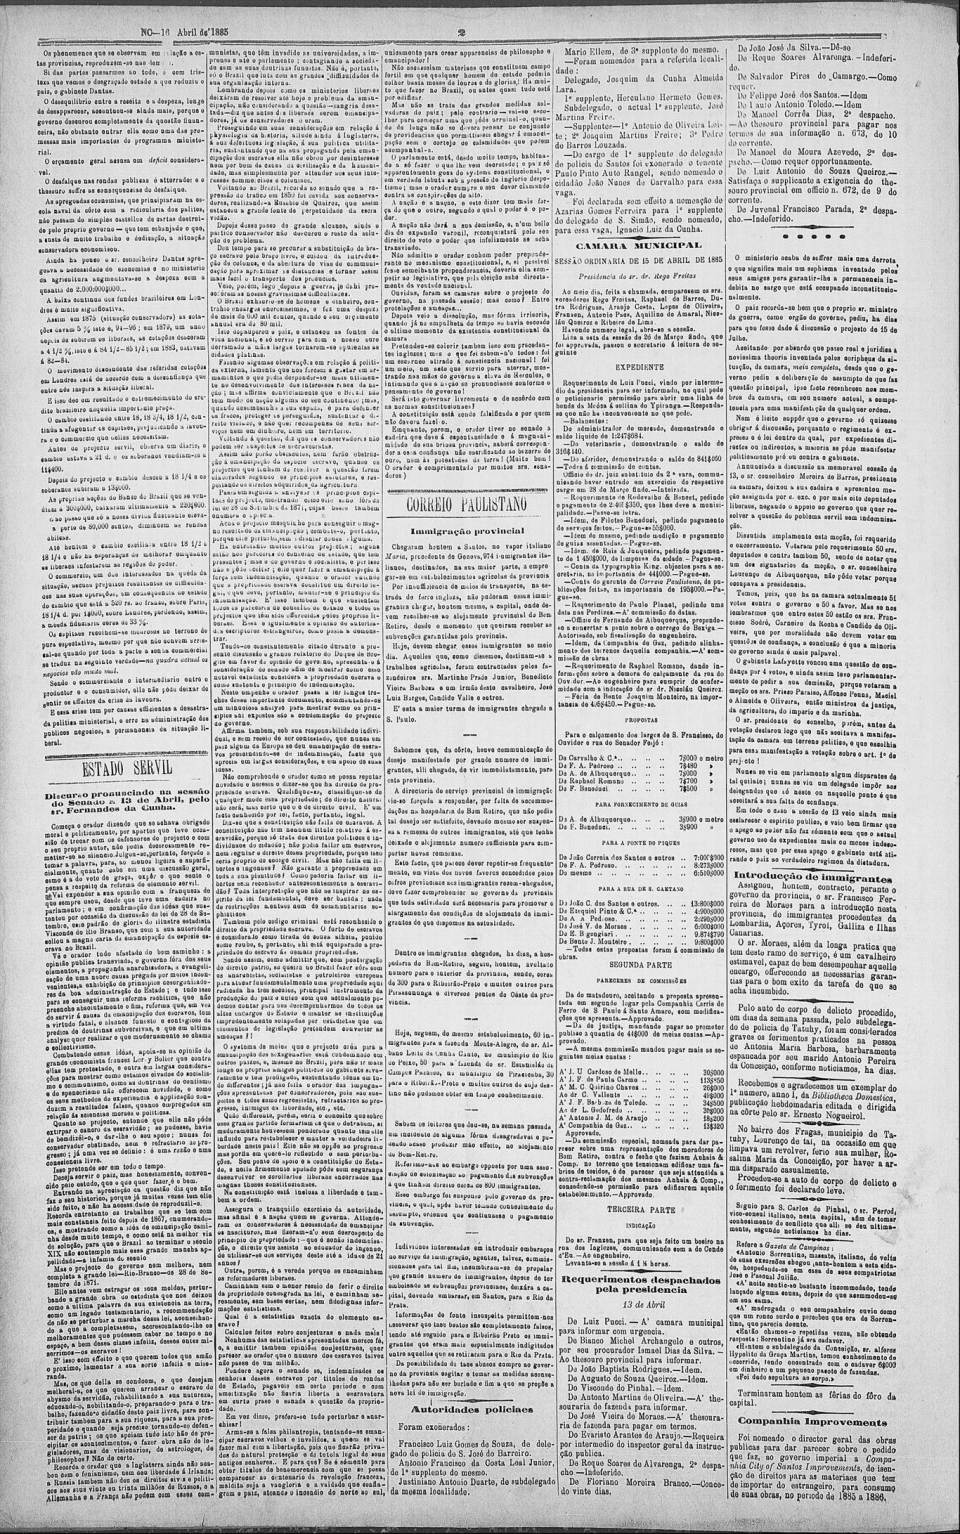 art-vapor-maria-em-santos-problemas-correio-paulistano-16-april-1885-folha